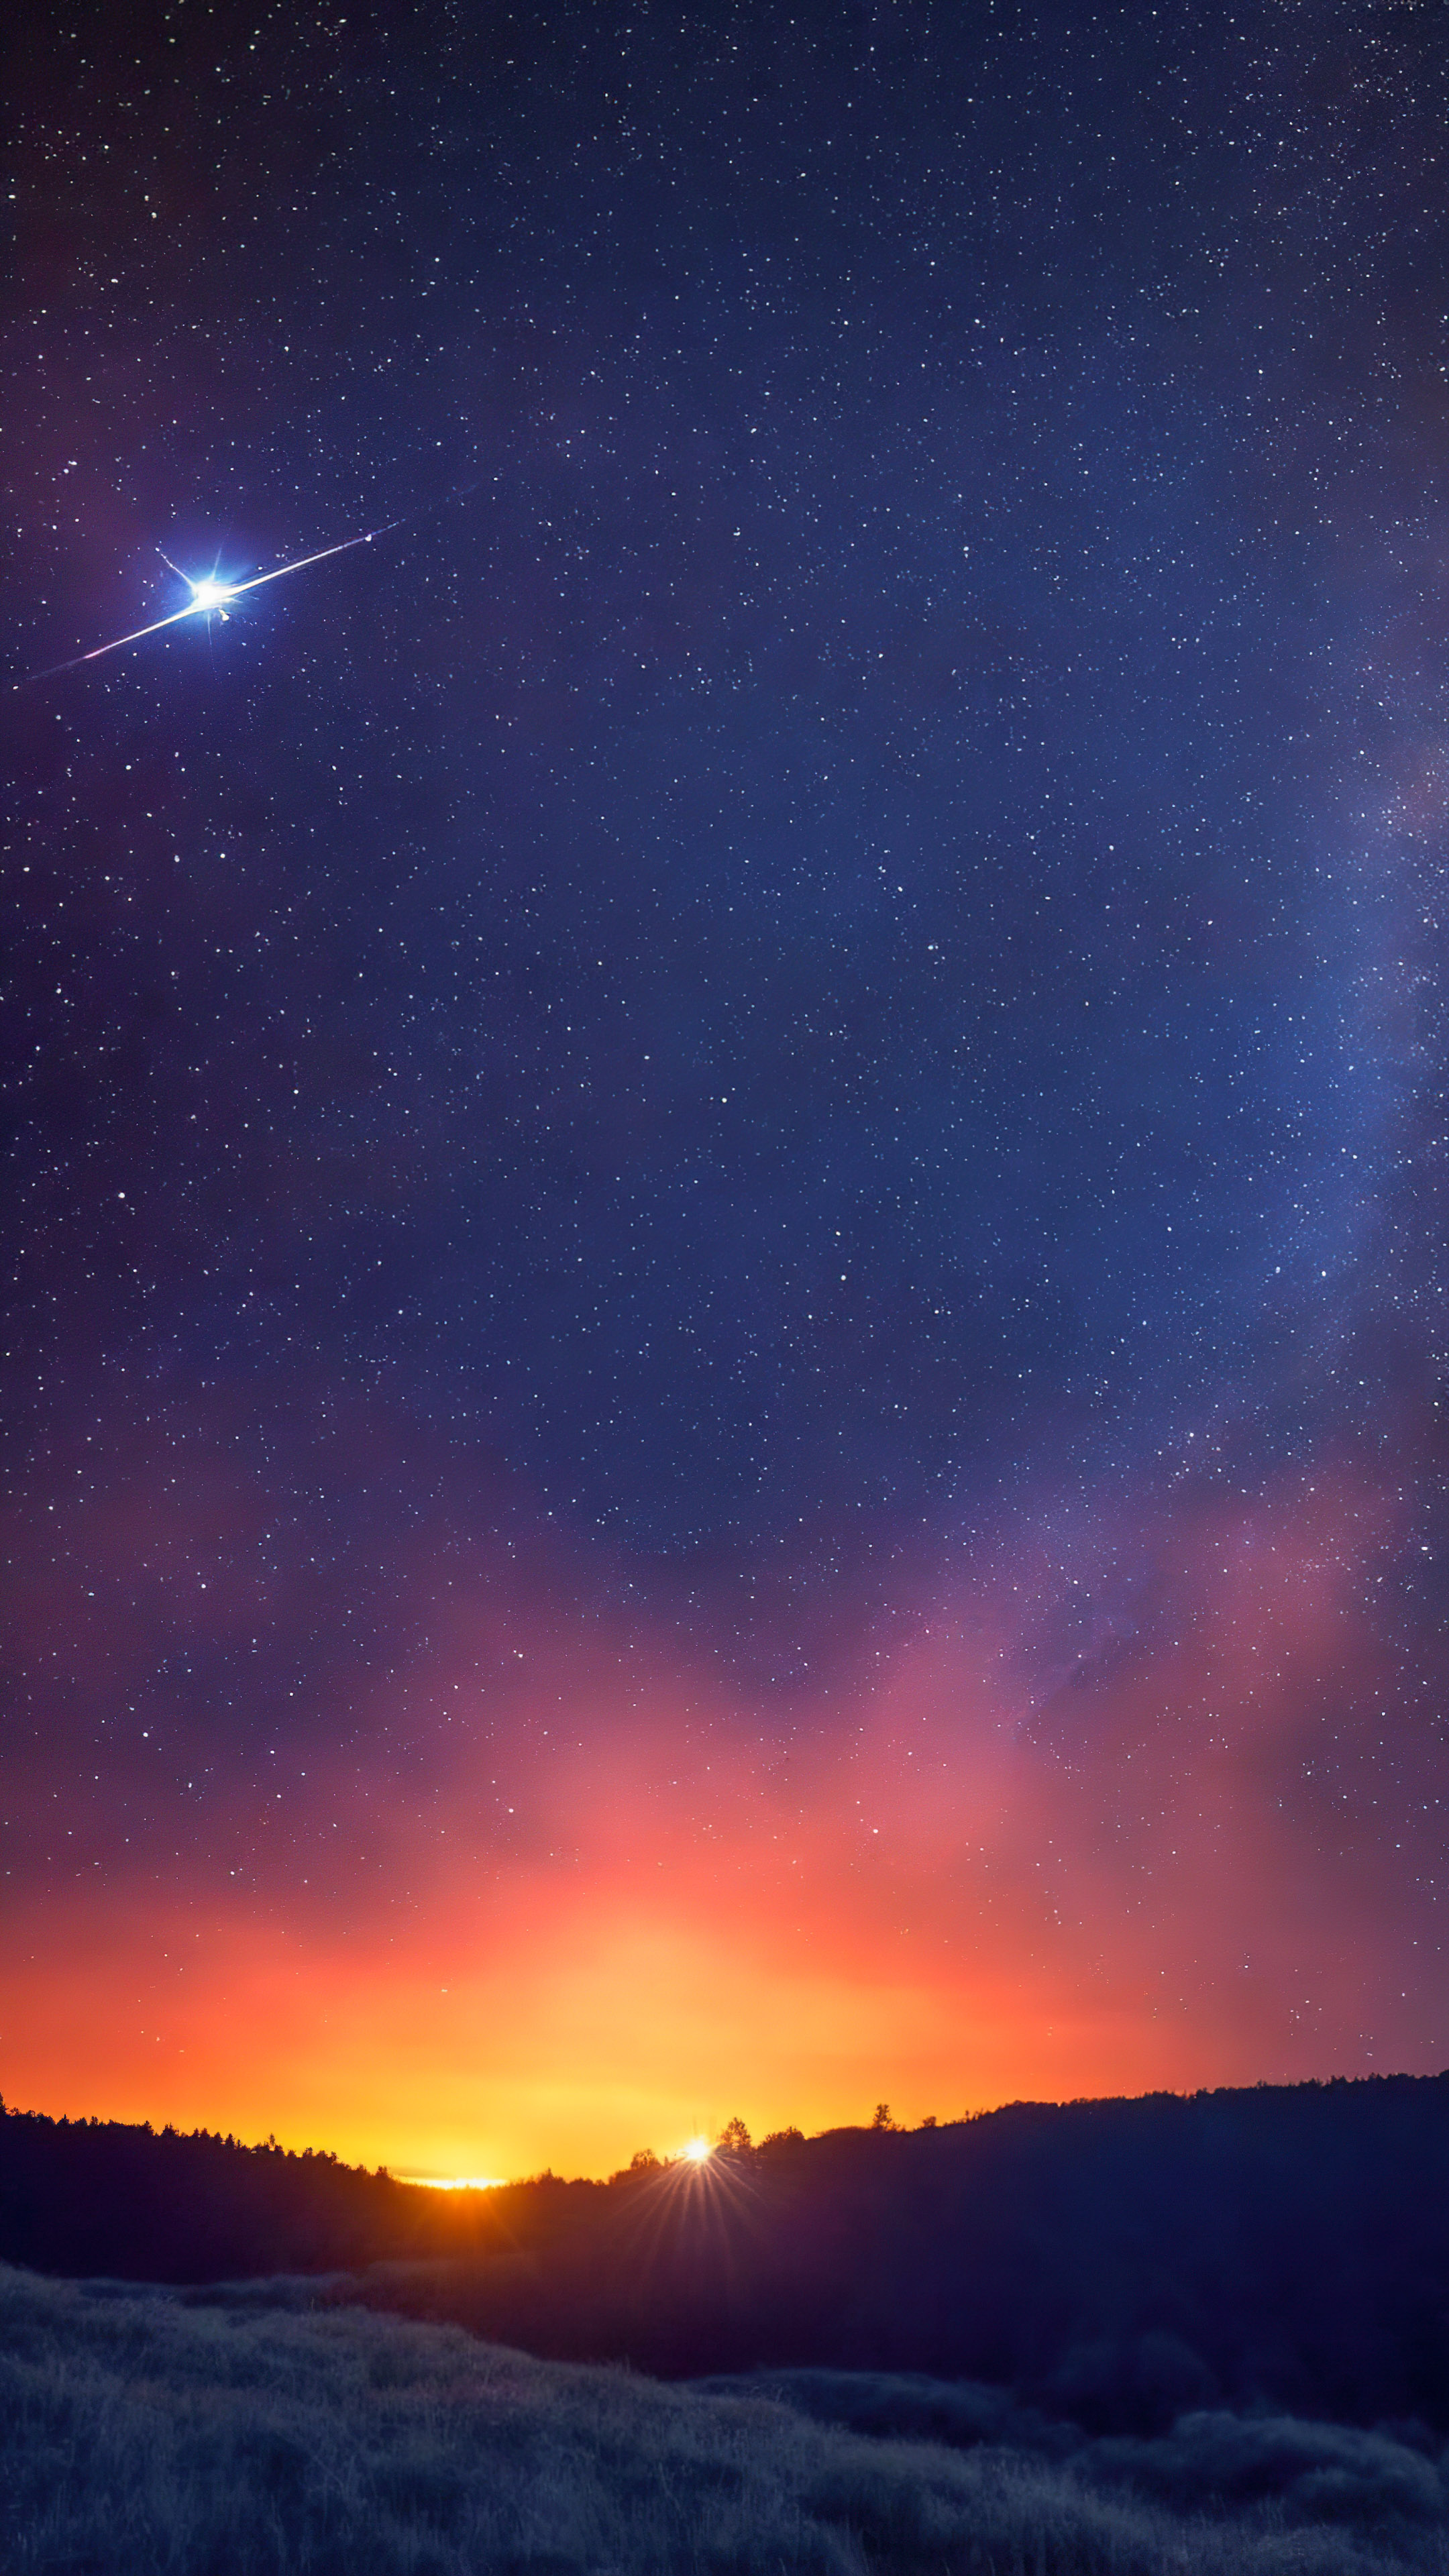 Laissez-vous hypnotiser par notre fond d'écran de nuit étoilée noire, illustrant une pluie de météores enflammée traversant un ciel de minuit, laissant des traînées éblouissantes de lumière.